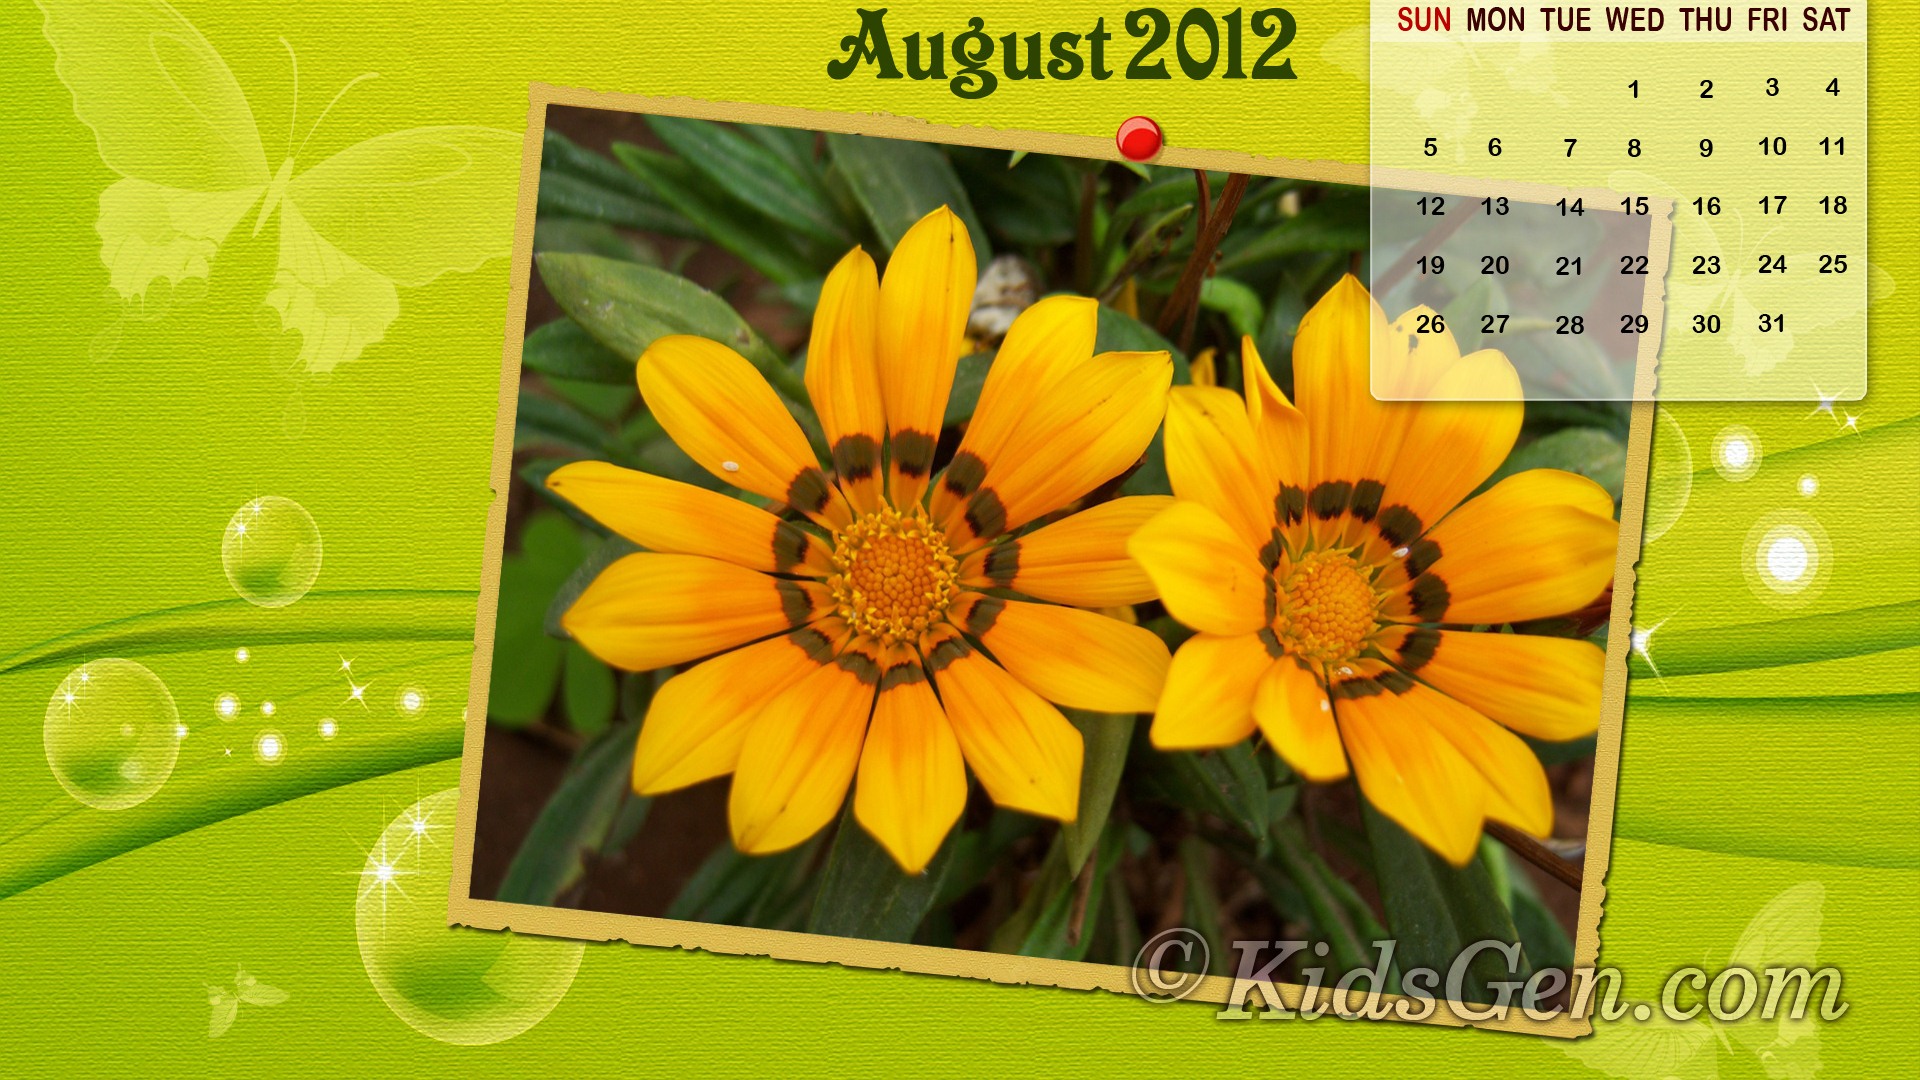 August 2012 Calendar wallpapers (2) #13 - 1920x1080